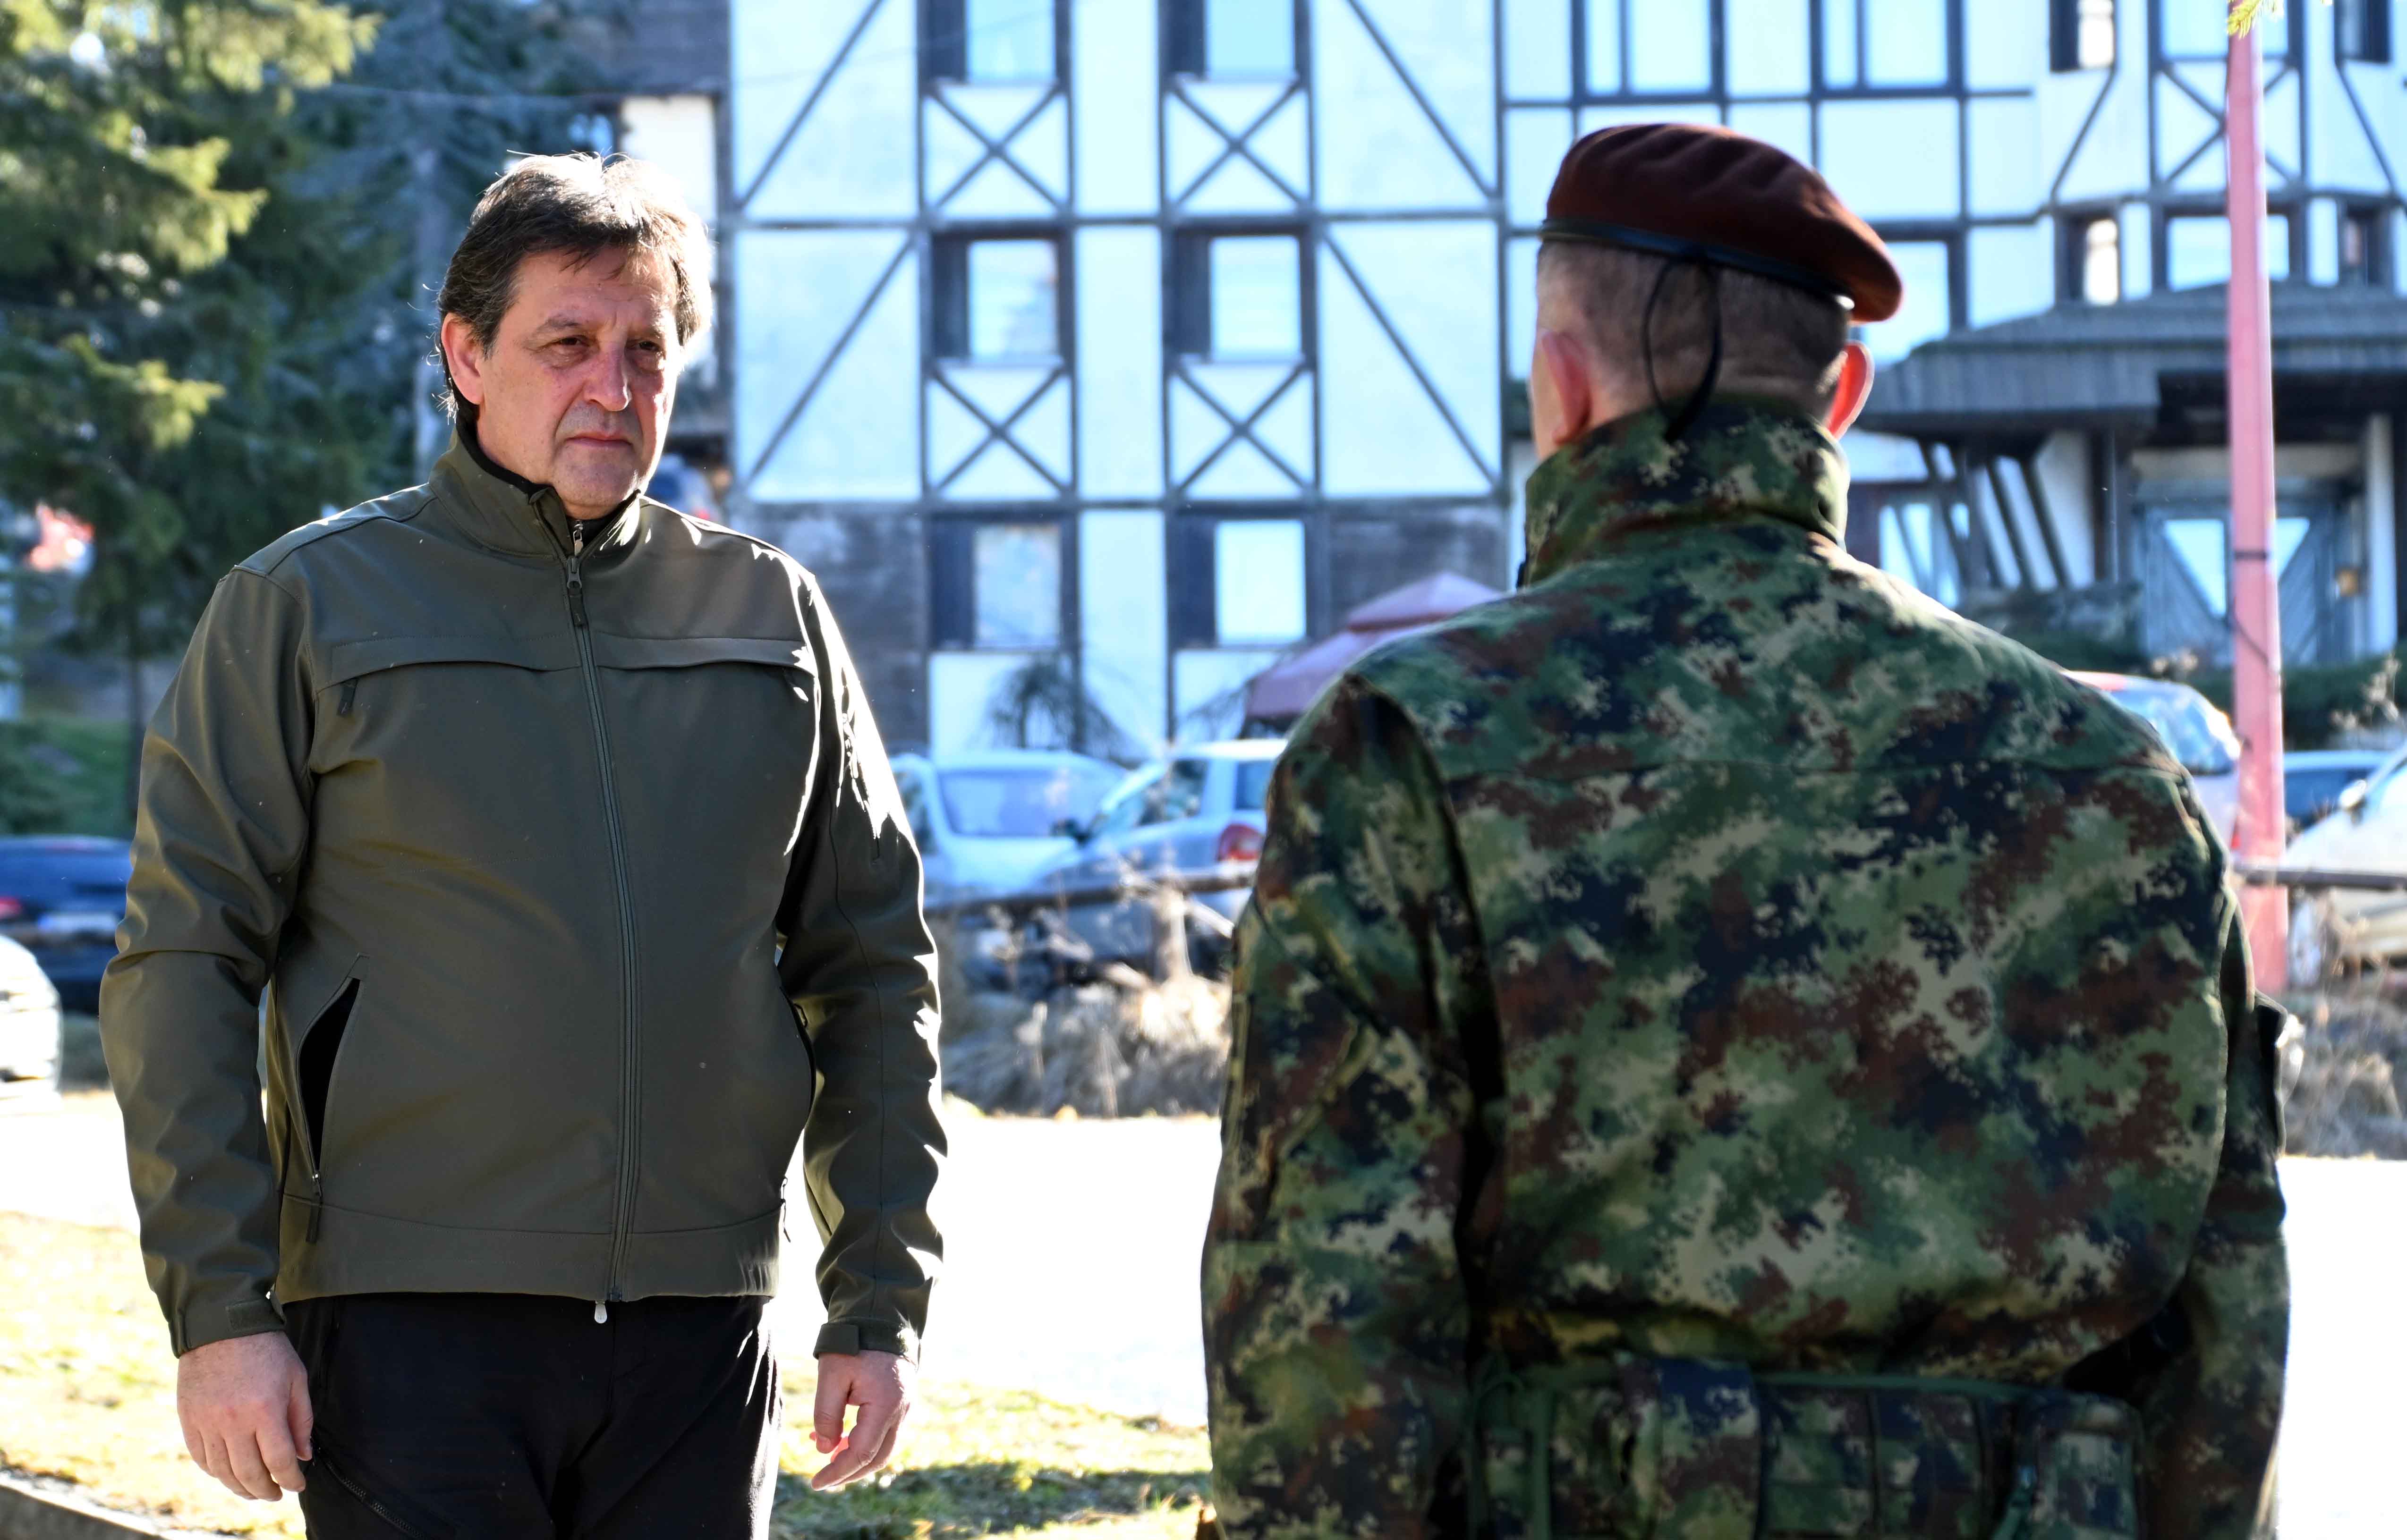 Министар Братислав Гашић поручио је на Копаонику да ће председник и државно руководство учинити све да сачувају мир и стабилност